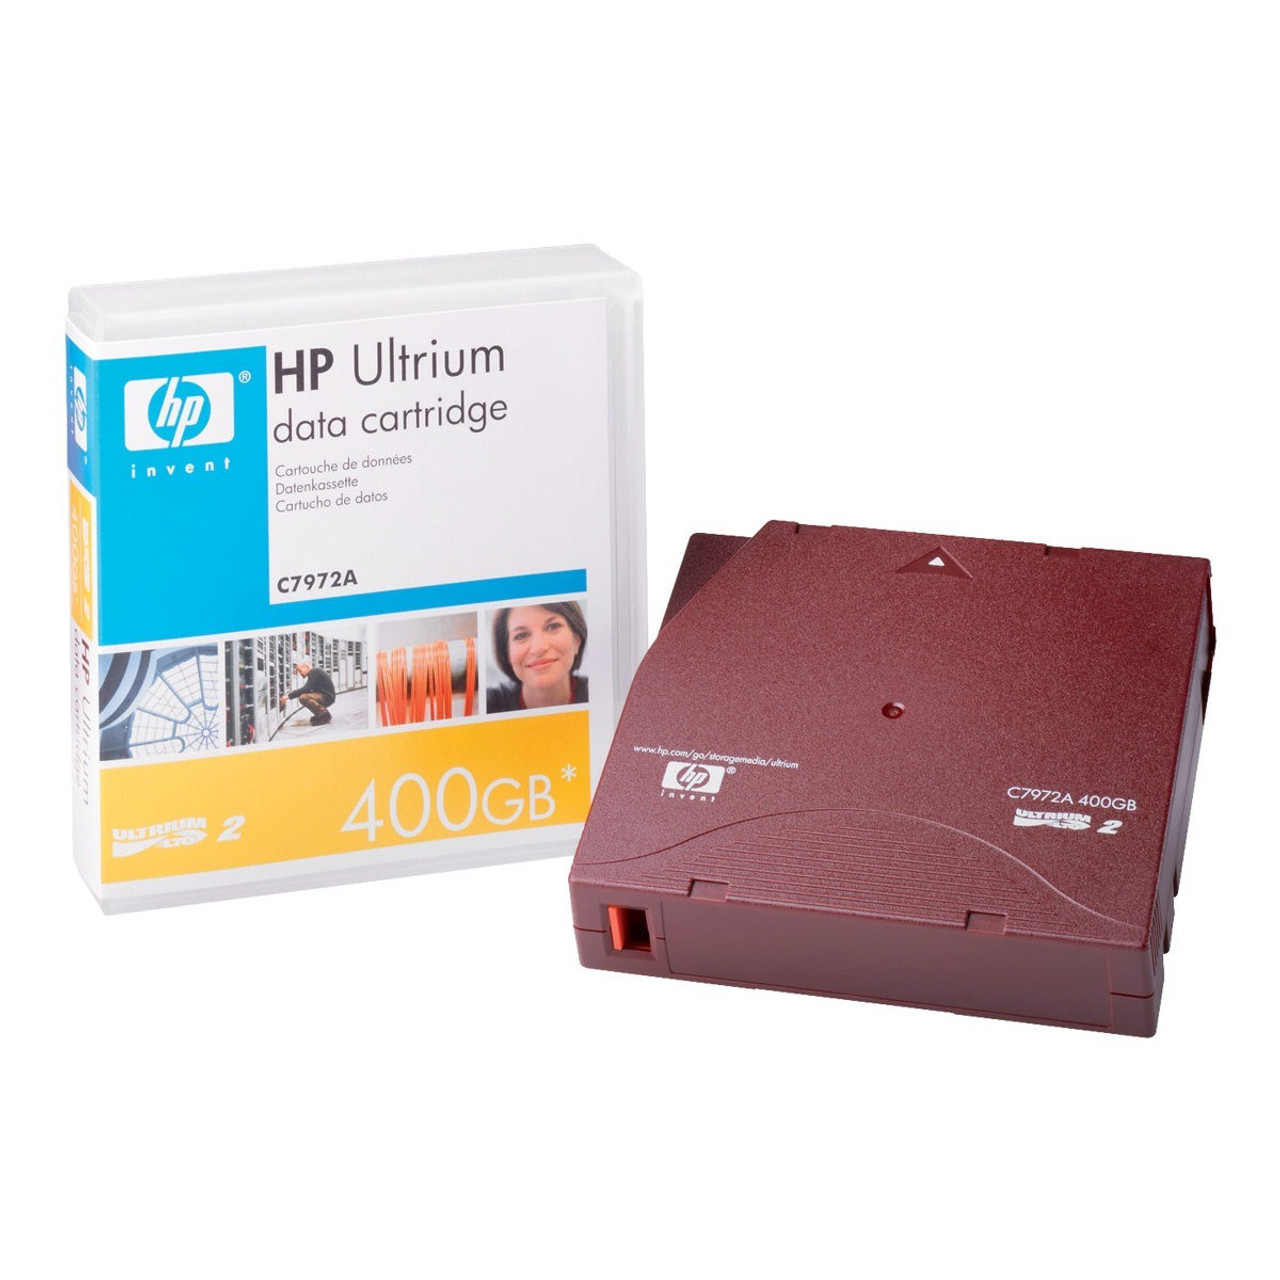 HP LTO Ultirum 2 Tape 200/400 GB Data Cartridge - C7972A